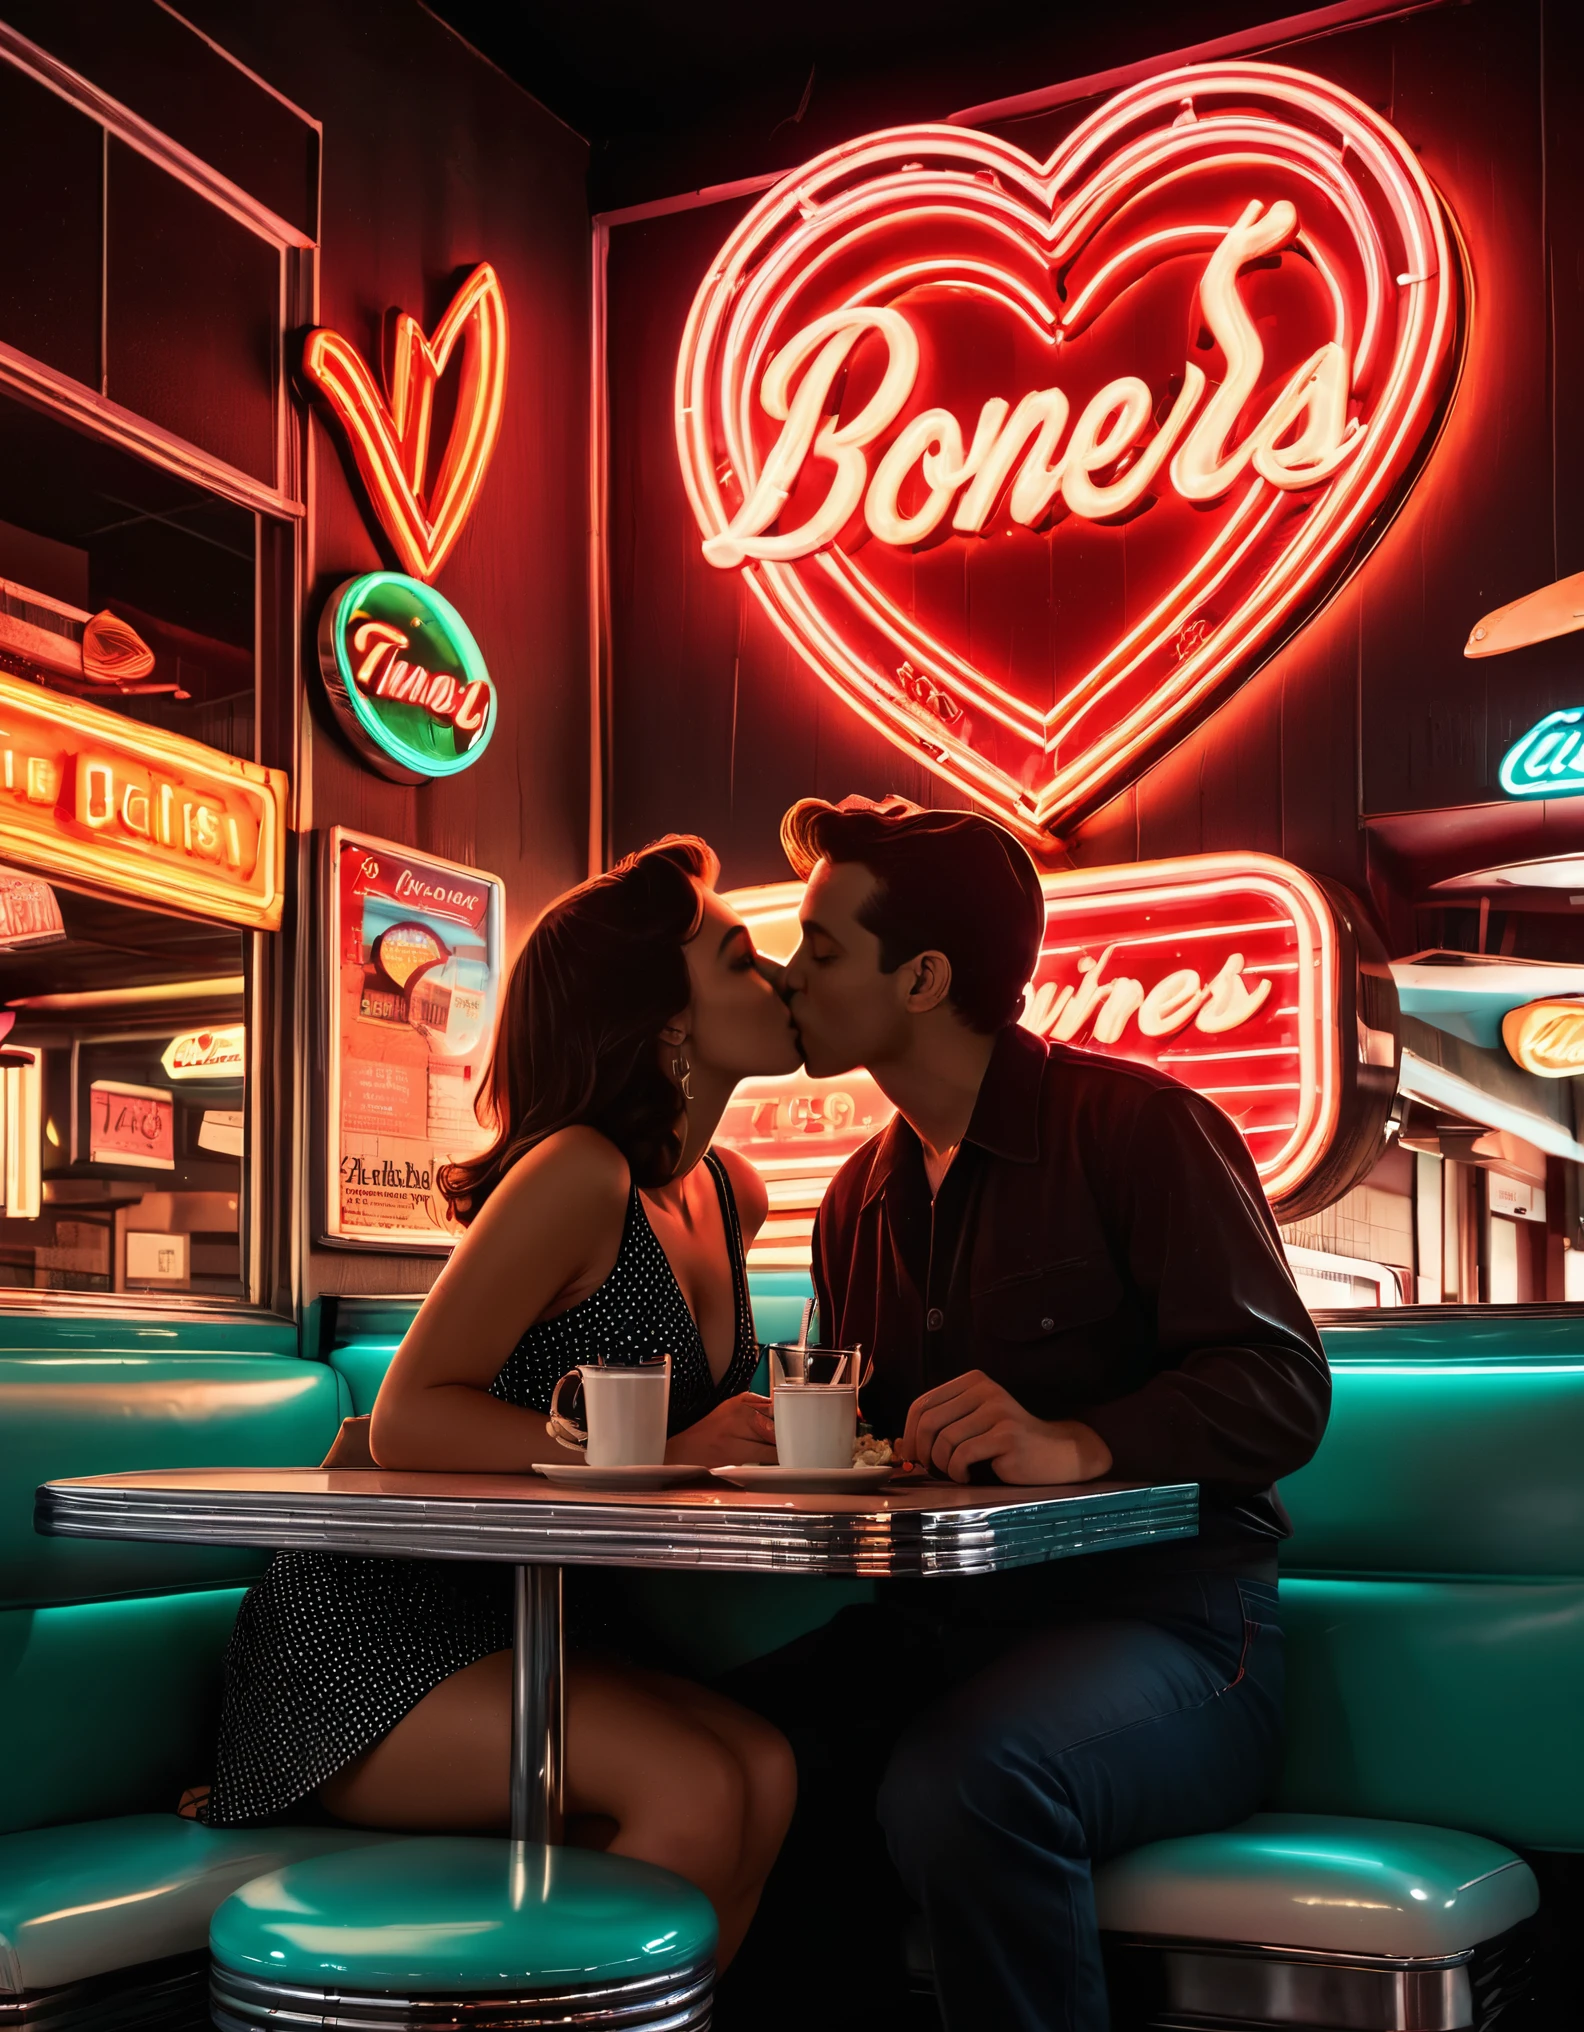 식당에서 키스하는 커플의 실루엣을 담은 레트로 네온 아트 작품, 네온사인과 하트 모양을 배경으로, 1950년대 향수를 불러일으키는 분위기